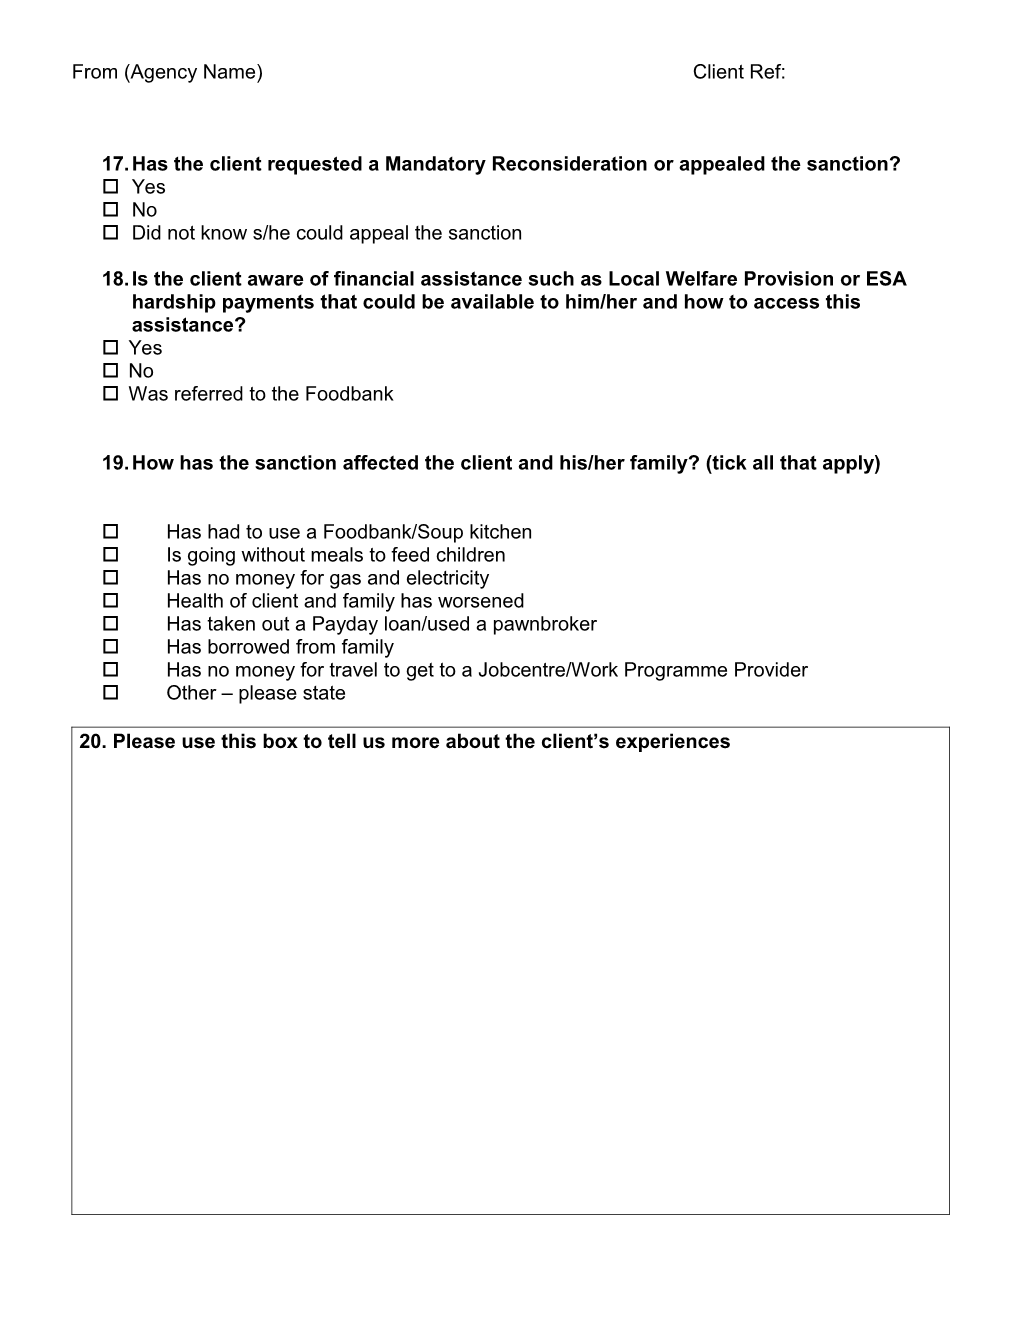 JSA Sanctions Client Questionnaire